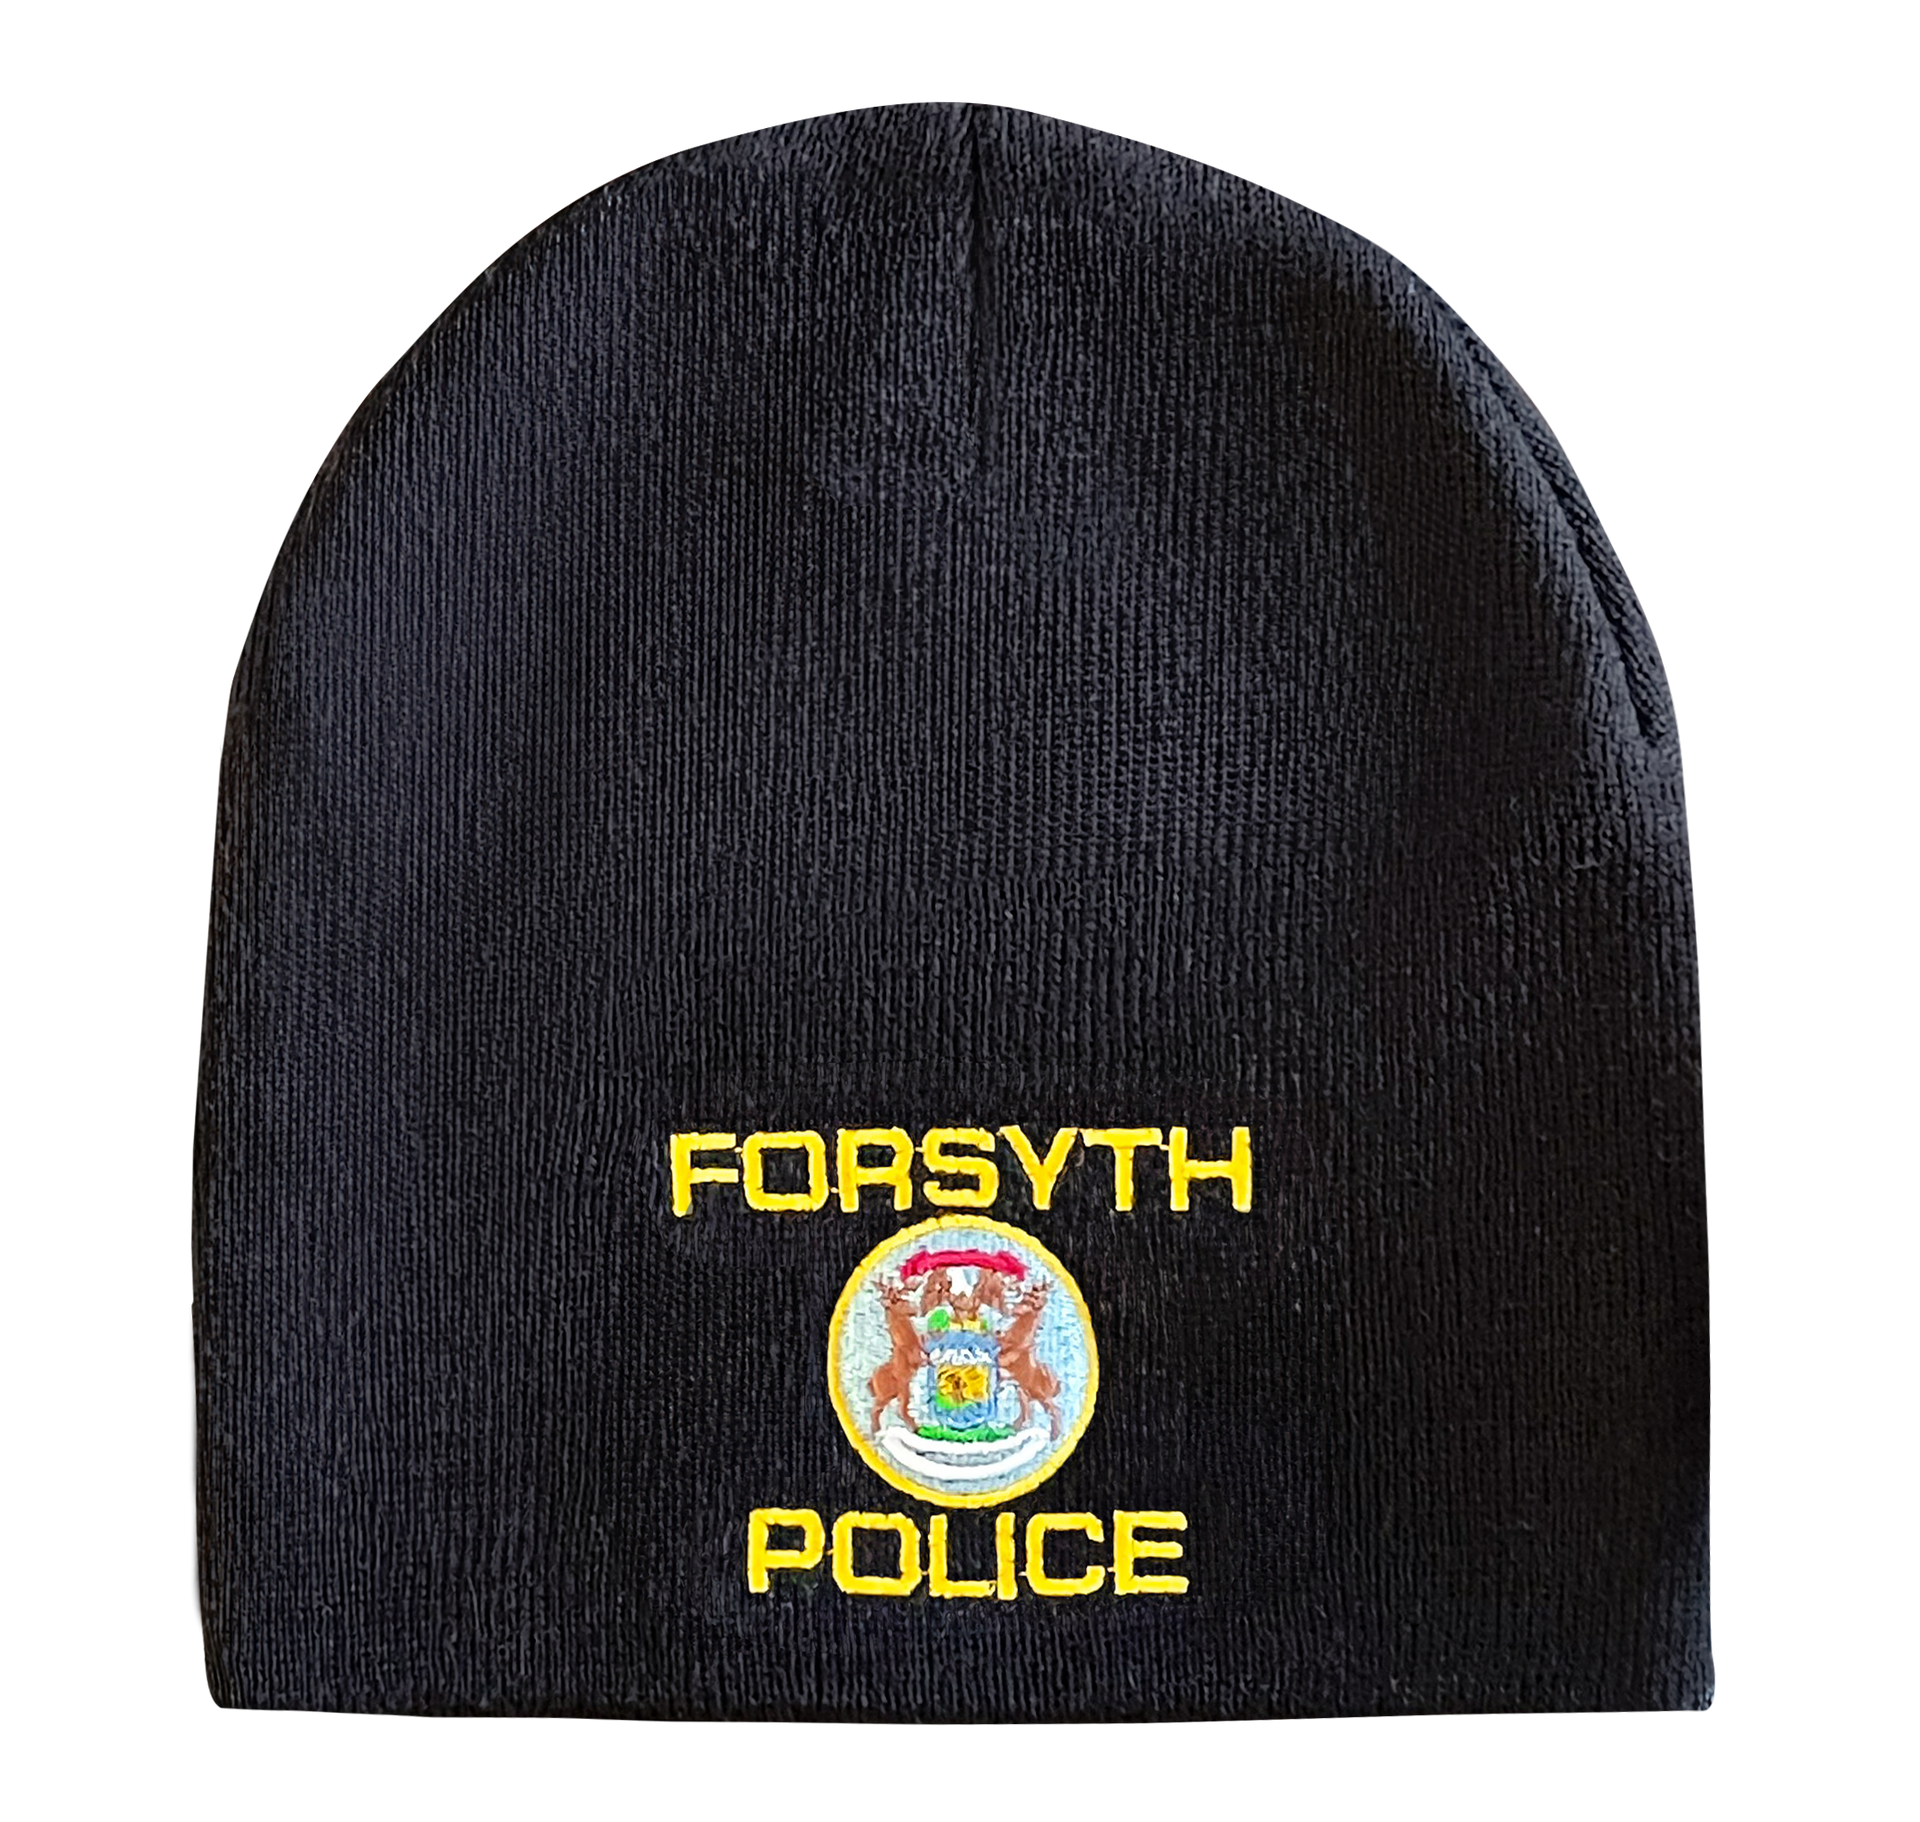 Fleece lined police cap